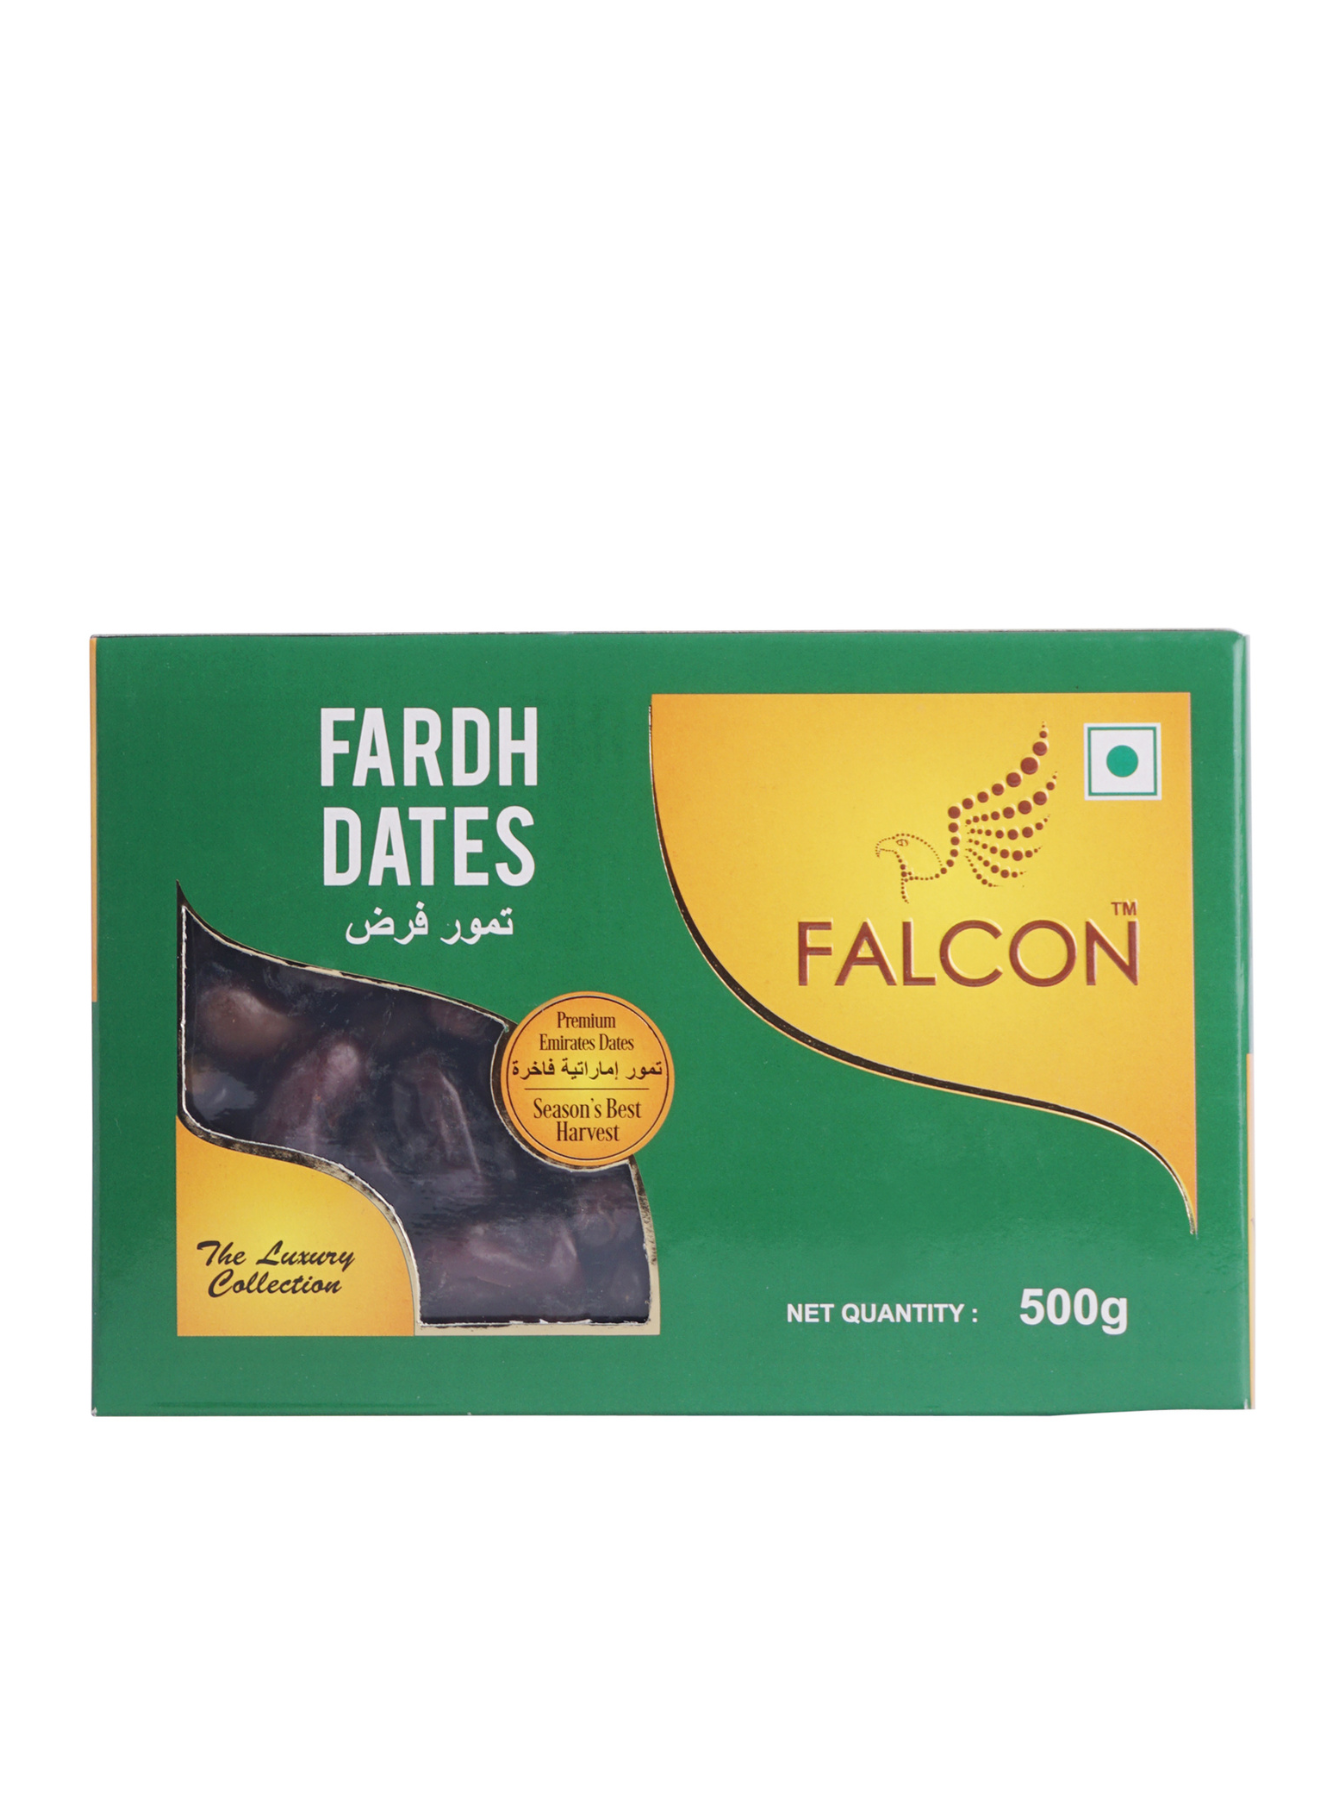 Falcon Fardh Dates Box- 500g